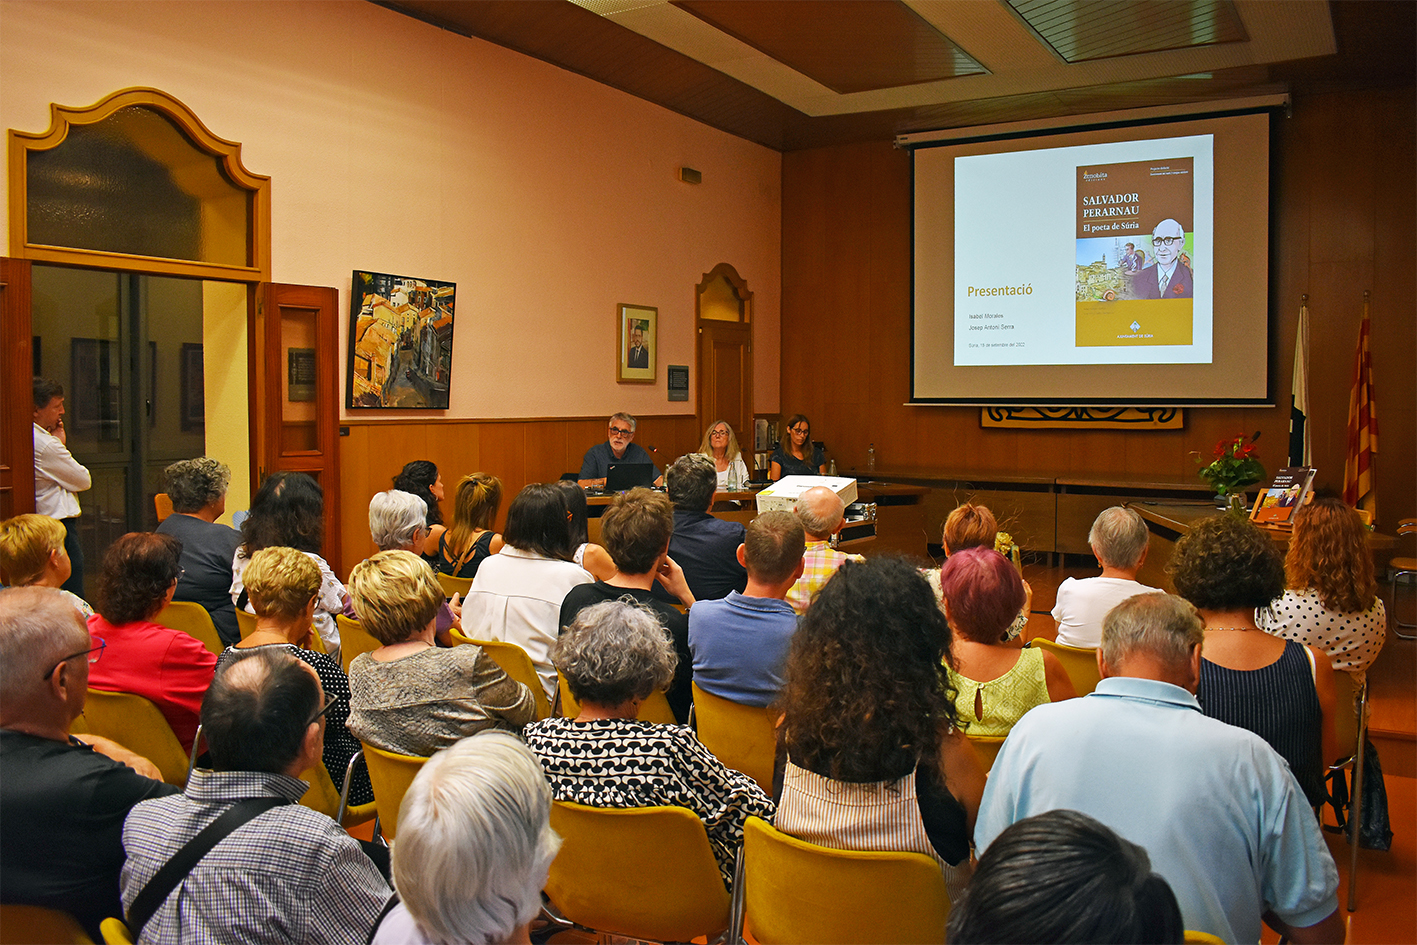 Any 2022 - Imatge de l'acte de presentaciÃ³ del dossier didÃ ctic 'Salvador Perarnau, el poeta de SÃºria' al salÃ³ de sessions de la Casa de la Vila, dins del programa de l'Onze de Setembre.